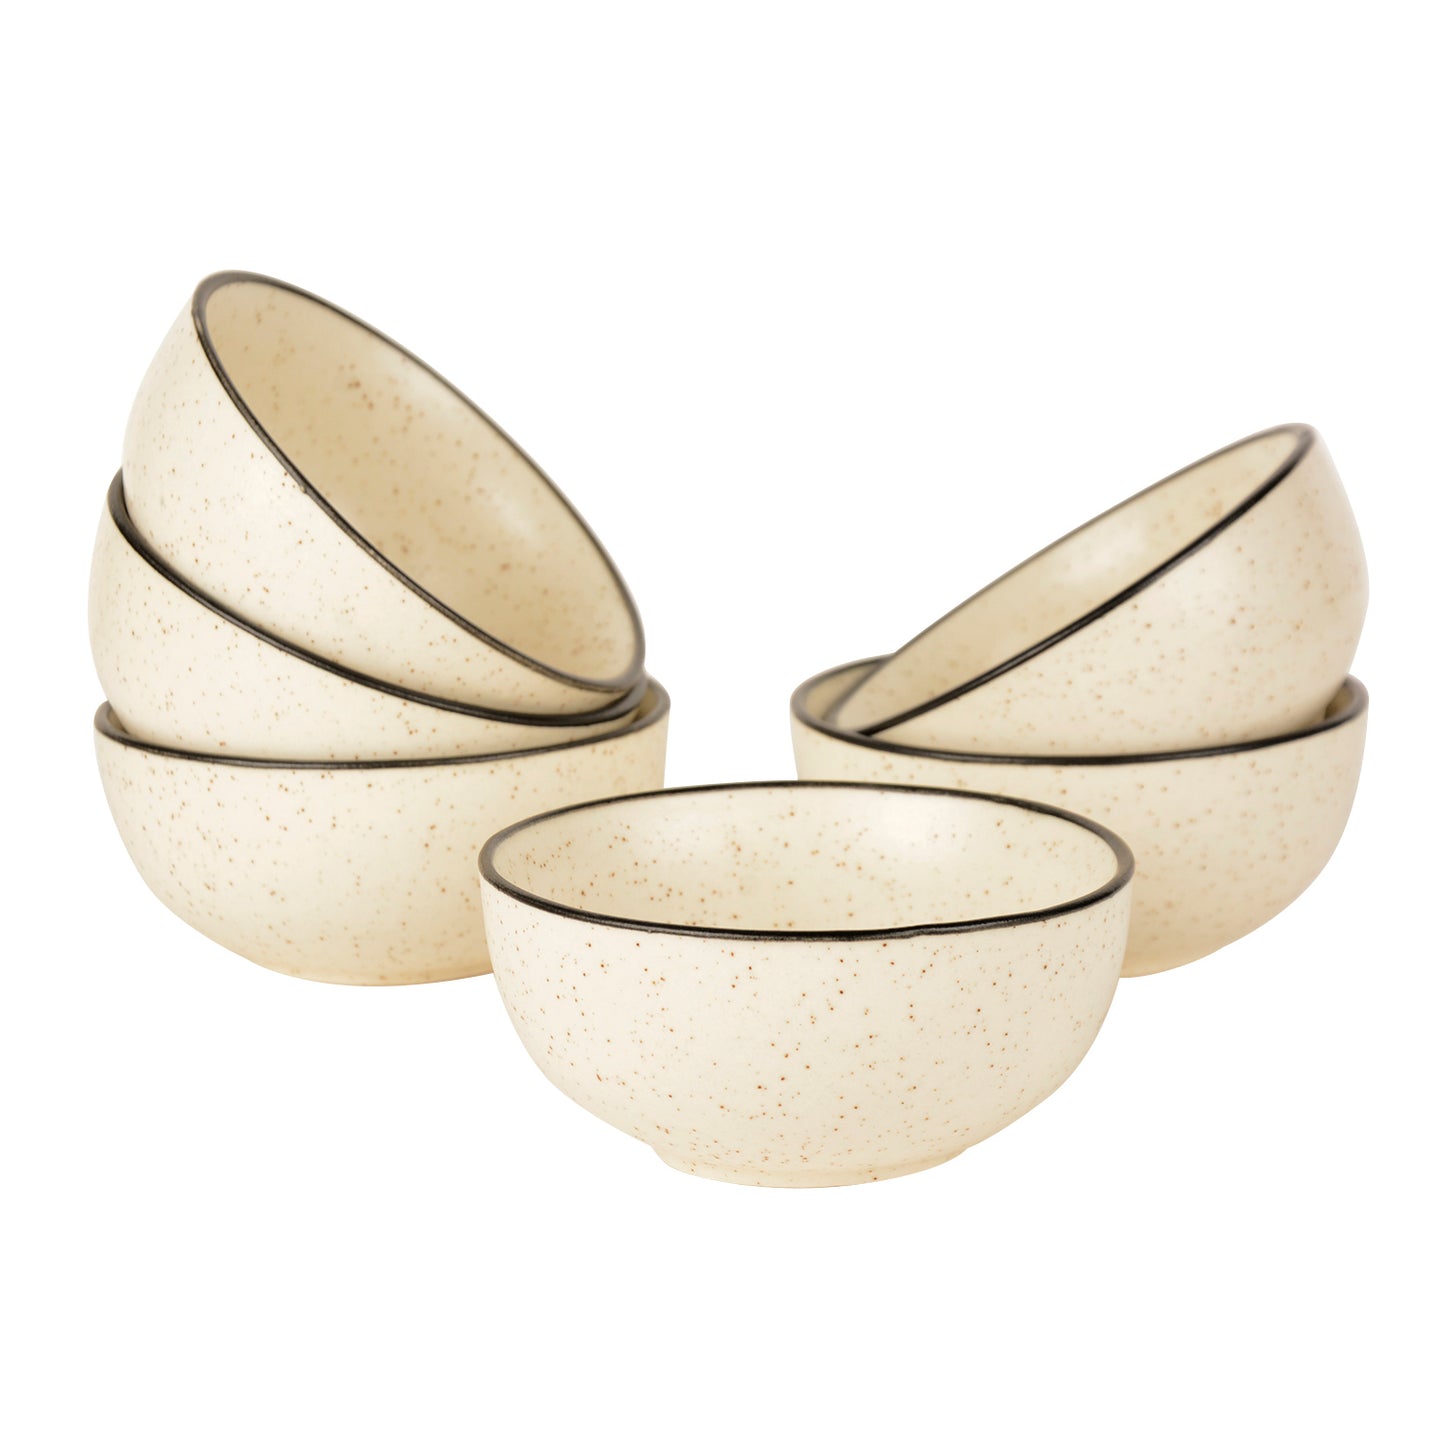 Ceramic Matt Finish Serving Bowls (200 ml , Set of 6, White)